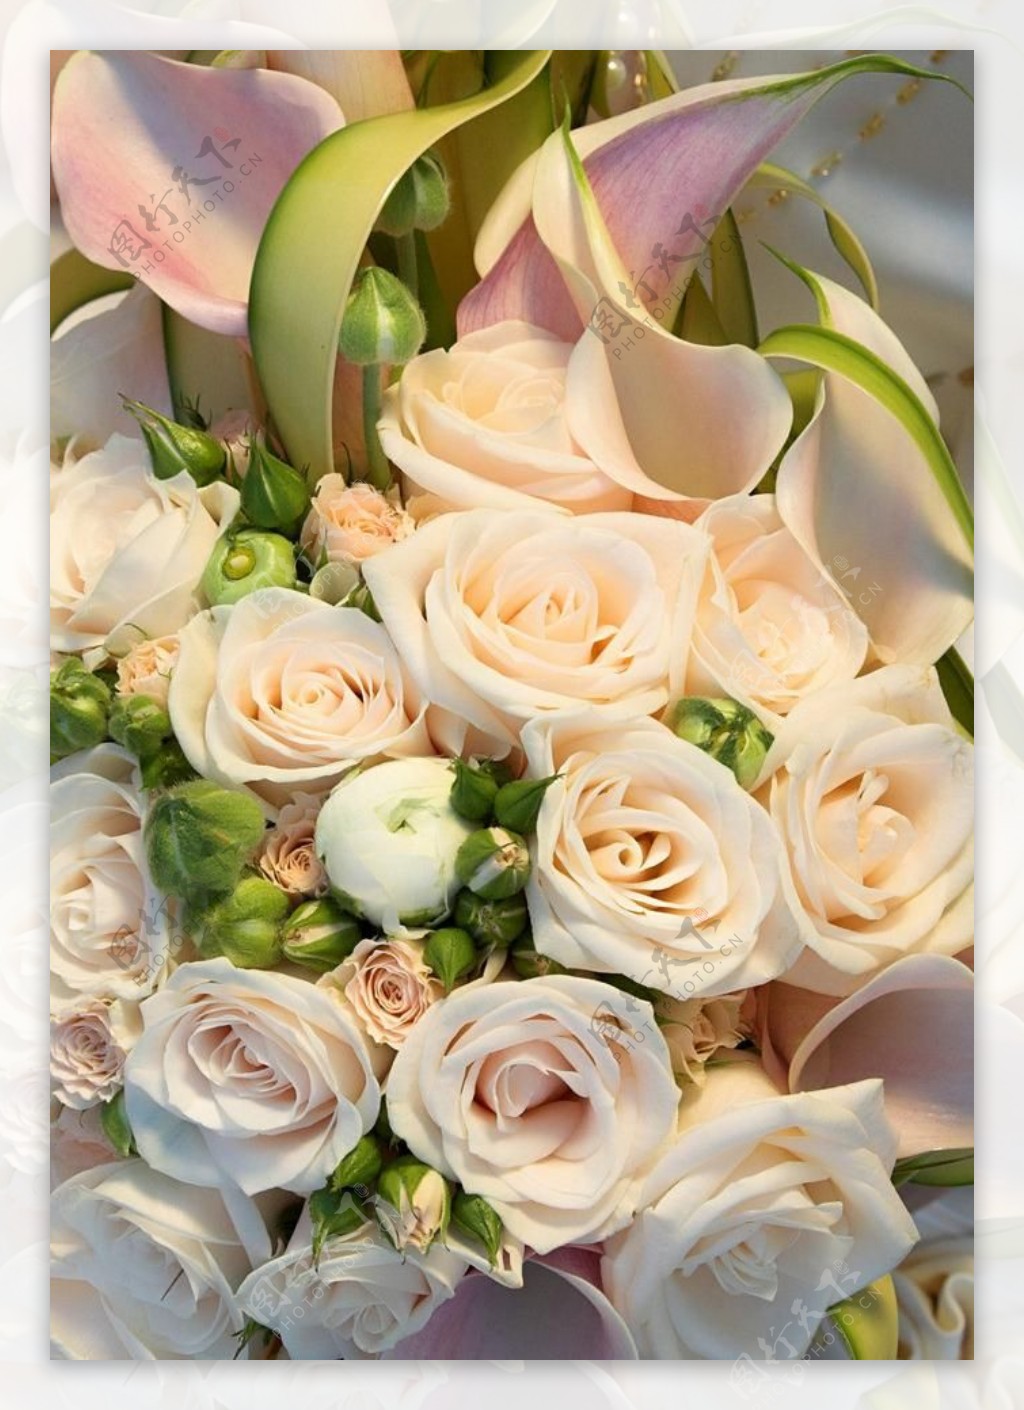 白色玫瑰花卉图片